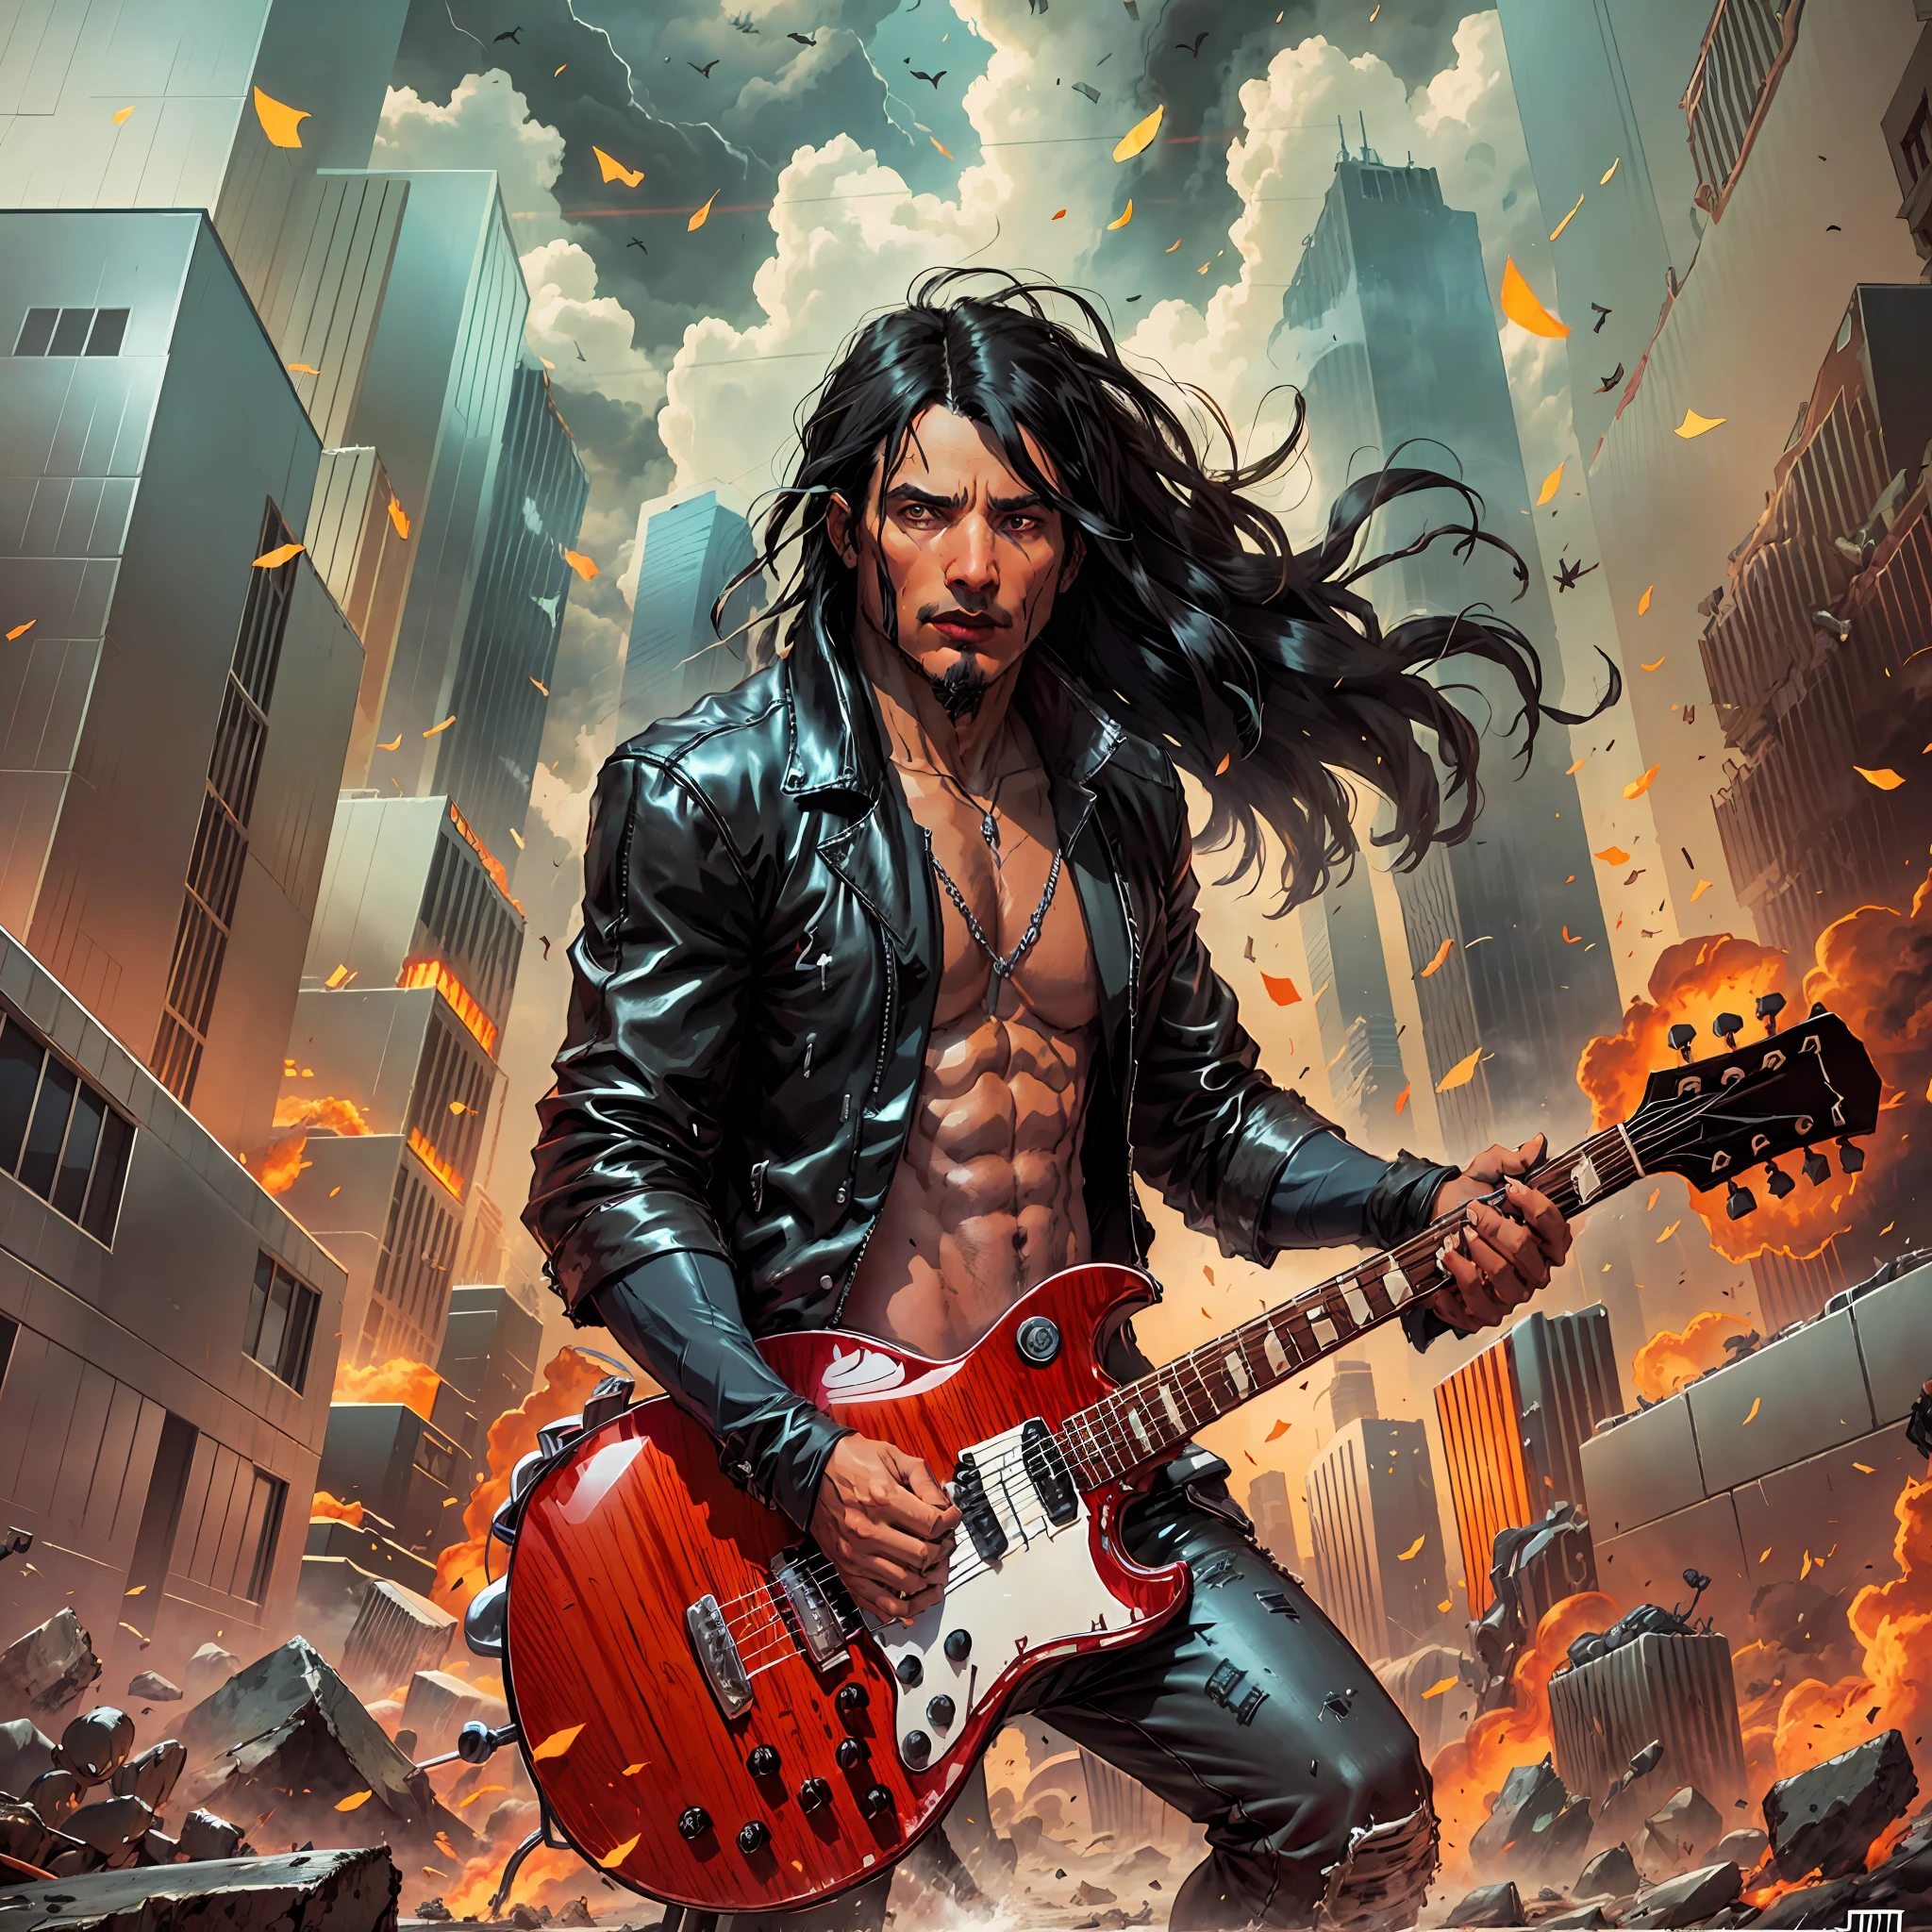 Ein Mann (1 Mann) mit langen schwarzen Haaren, Schwarze Rock in Roll Style Jacke spielt Gitarre, Eine Stadt, die völlig zerstört ist und in Flammen steht, epischer Fantasy-Digitalkunststil, epische Fantasy-Illustration